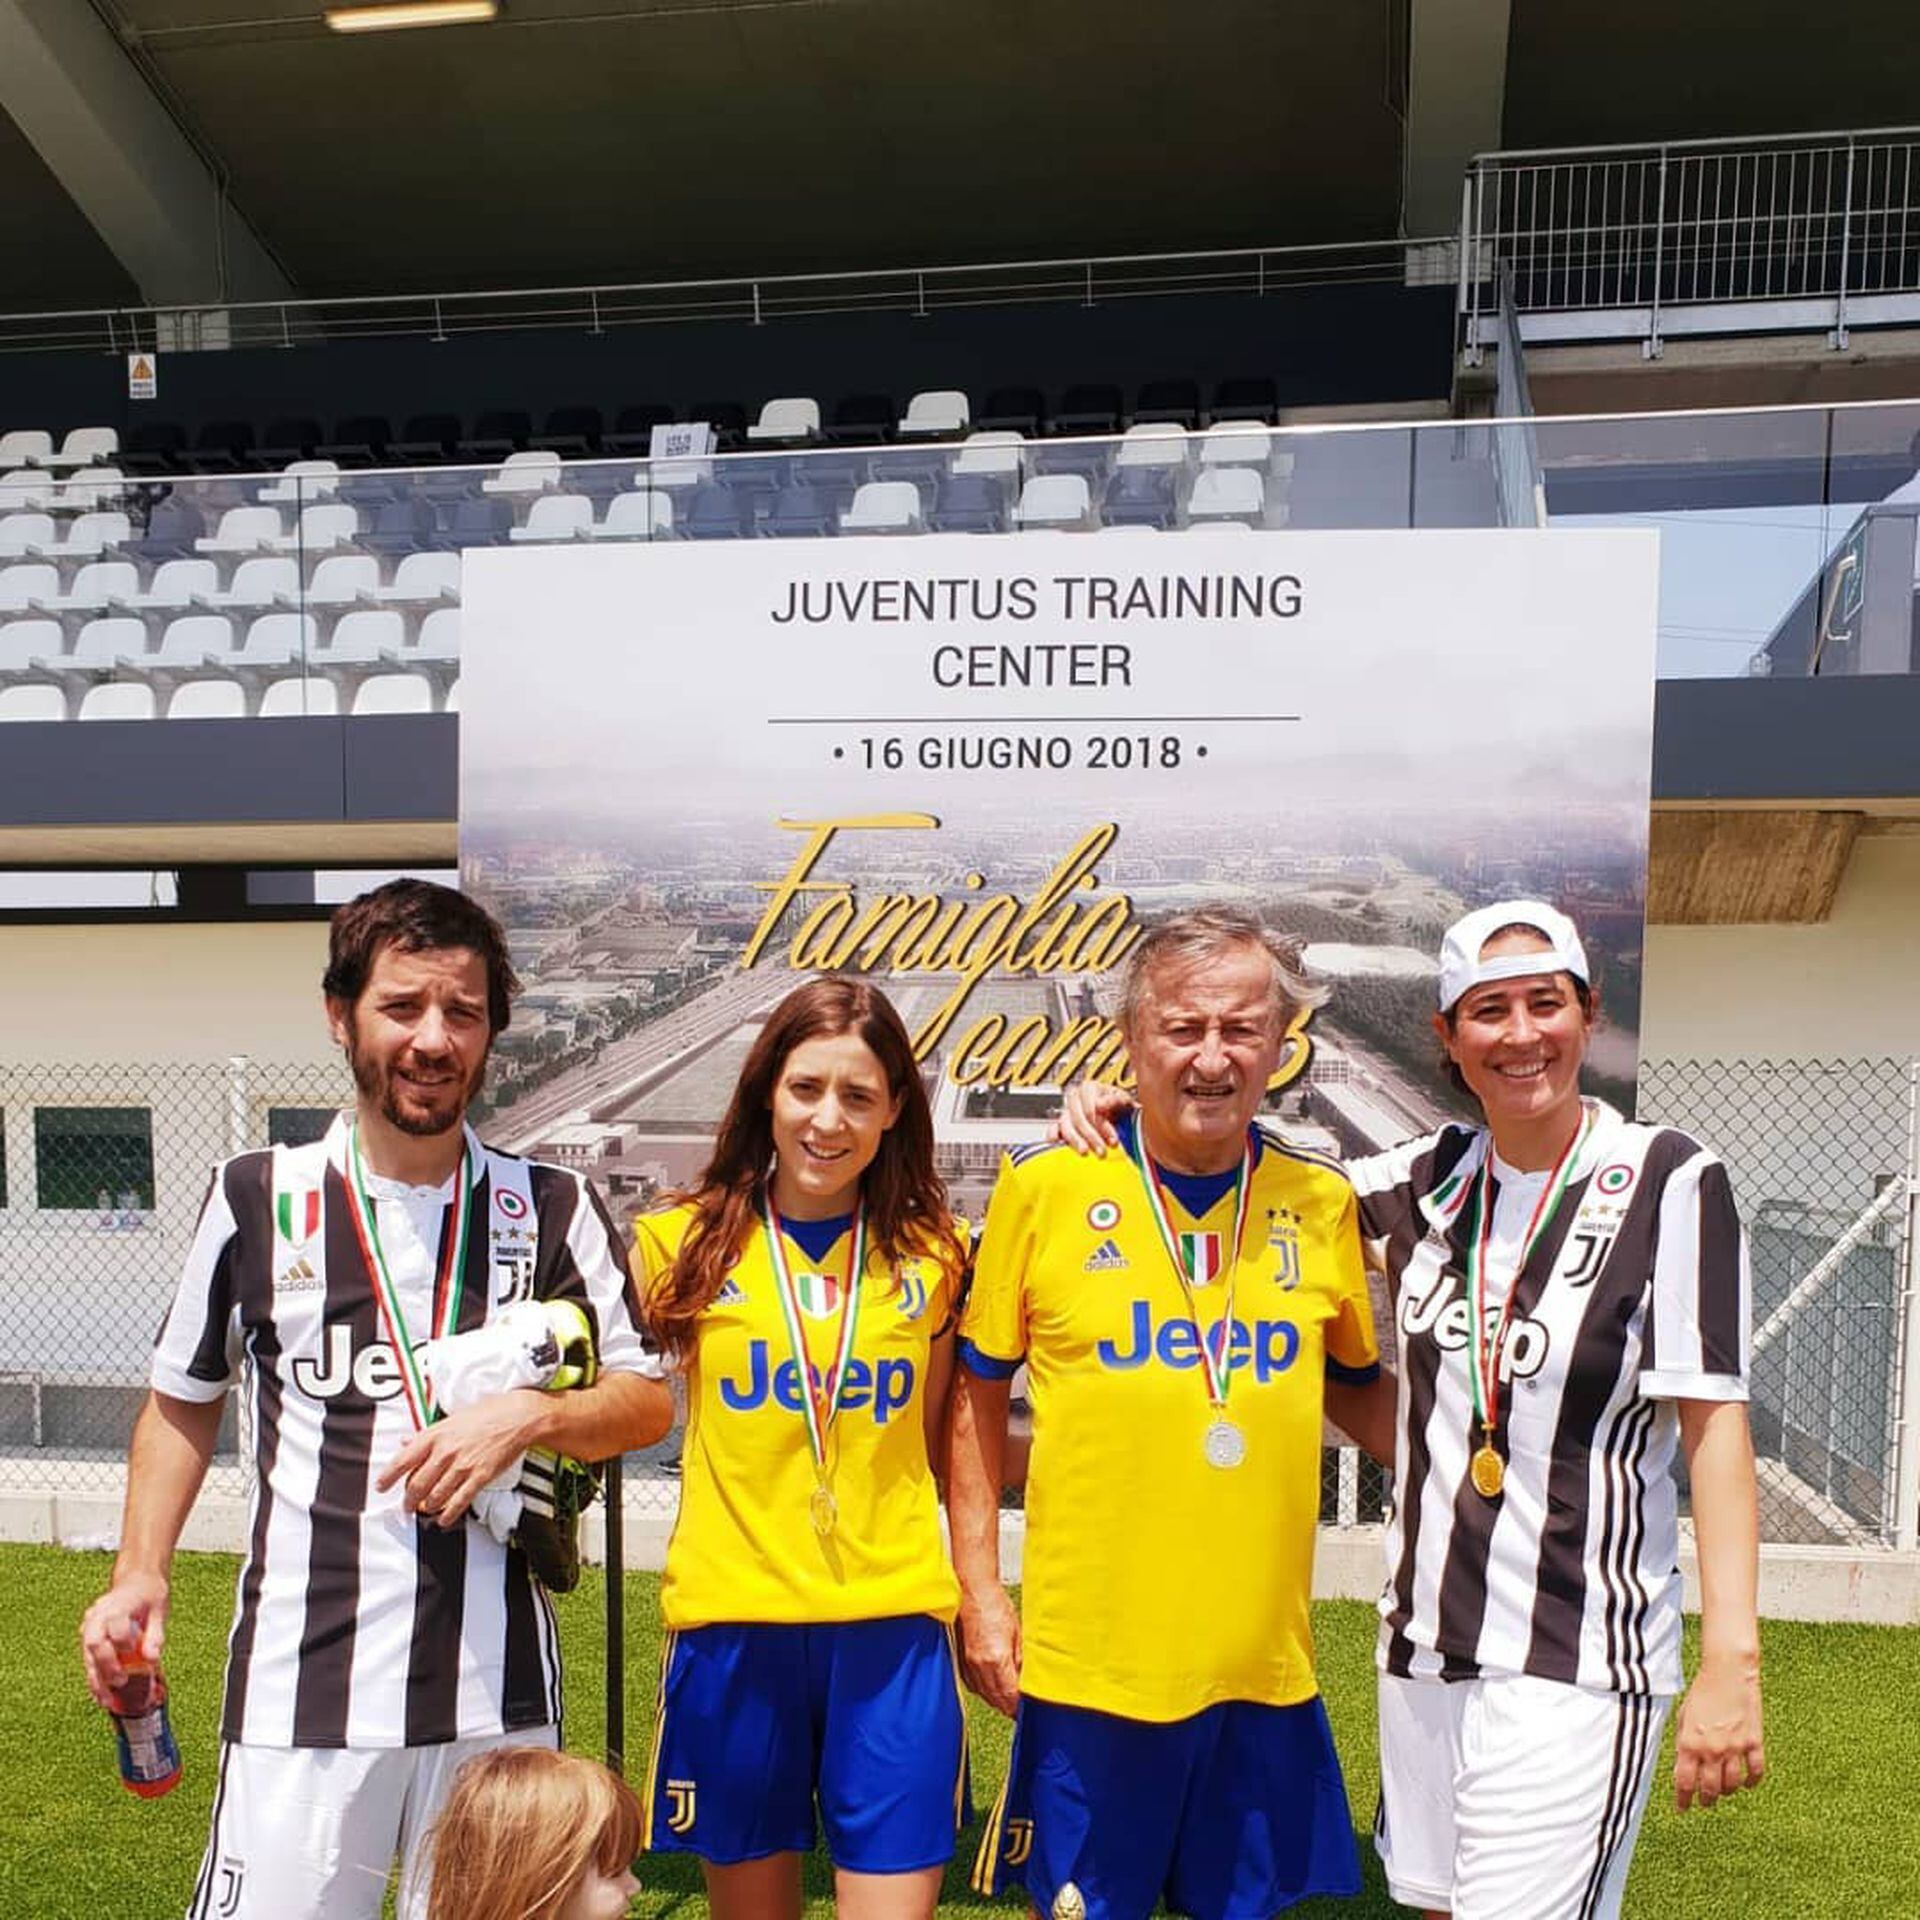 Rattazzi junto a sus tres hijos: Urbano, Alexia y Manuela, durante una visita a la cancha de Juventus. El club, el más poderoso y ganador de Italia, hoy es presidido por Andrea Agnelli, primo segundo de Cristiano.